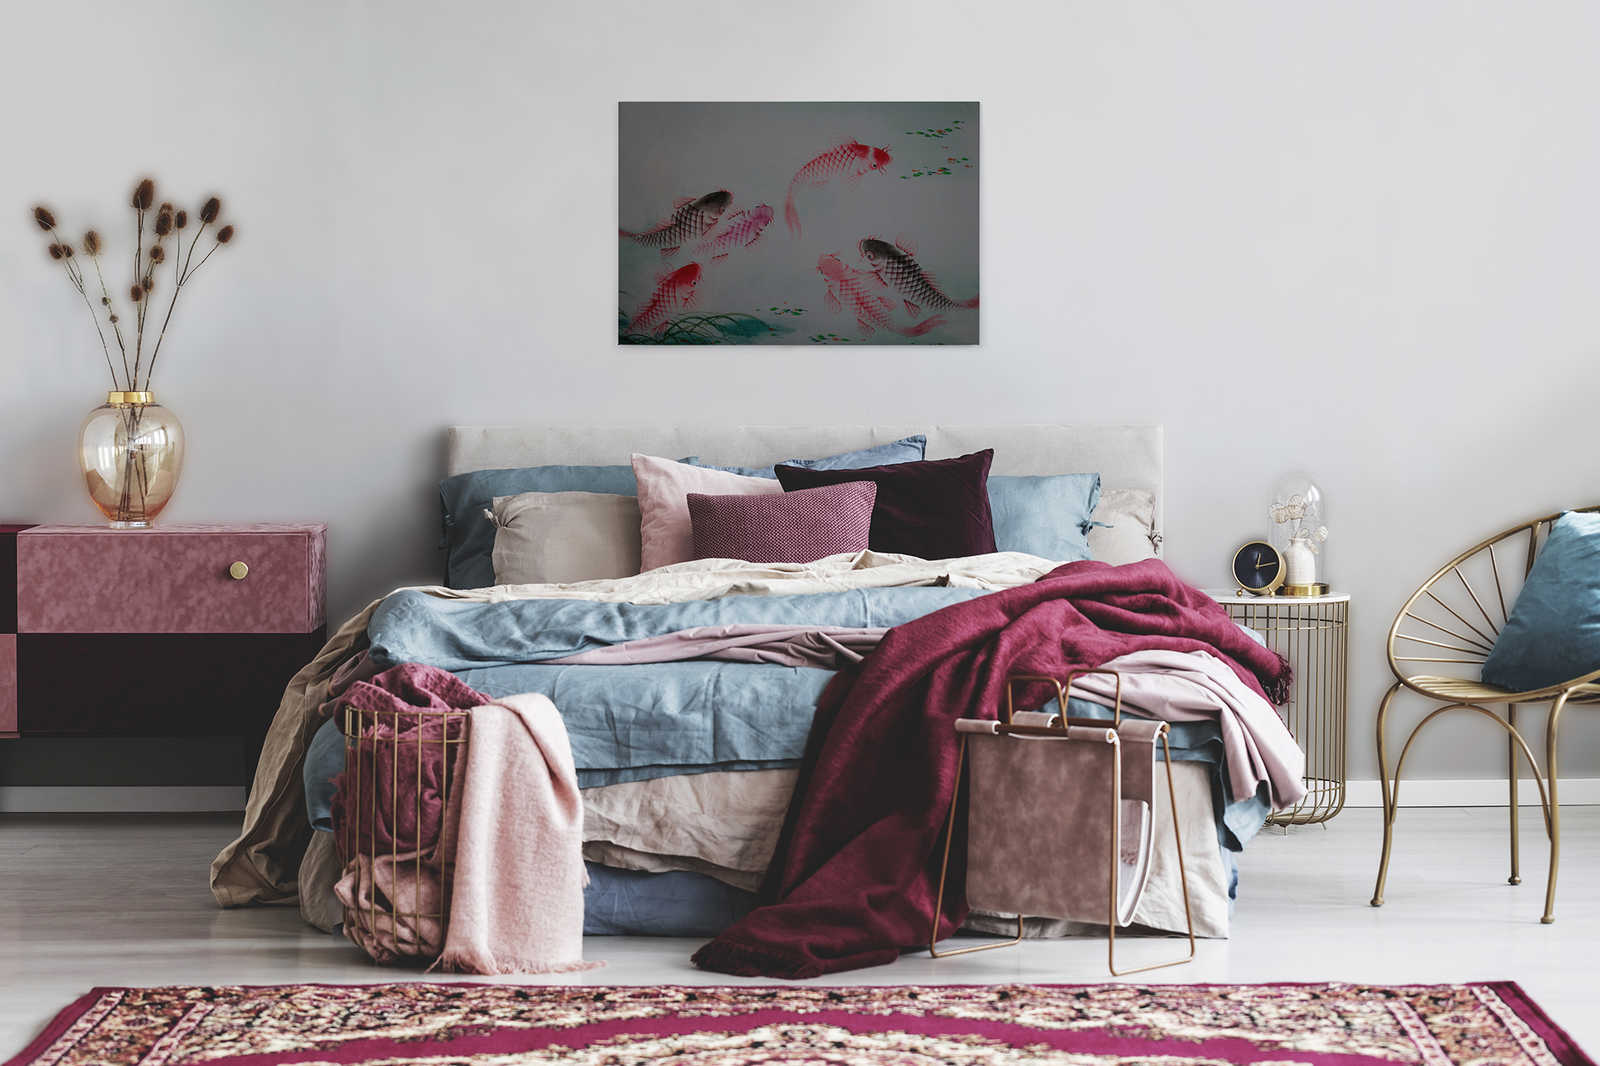             Tableau sur toile Asia Style avec étang de koi | walls by patel - 0,90 m x 0,60 m
        